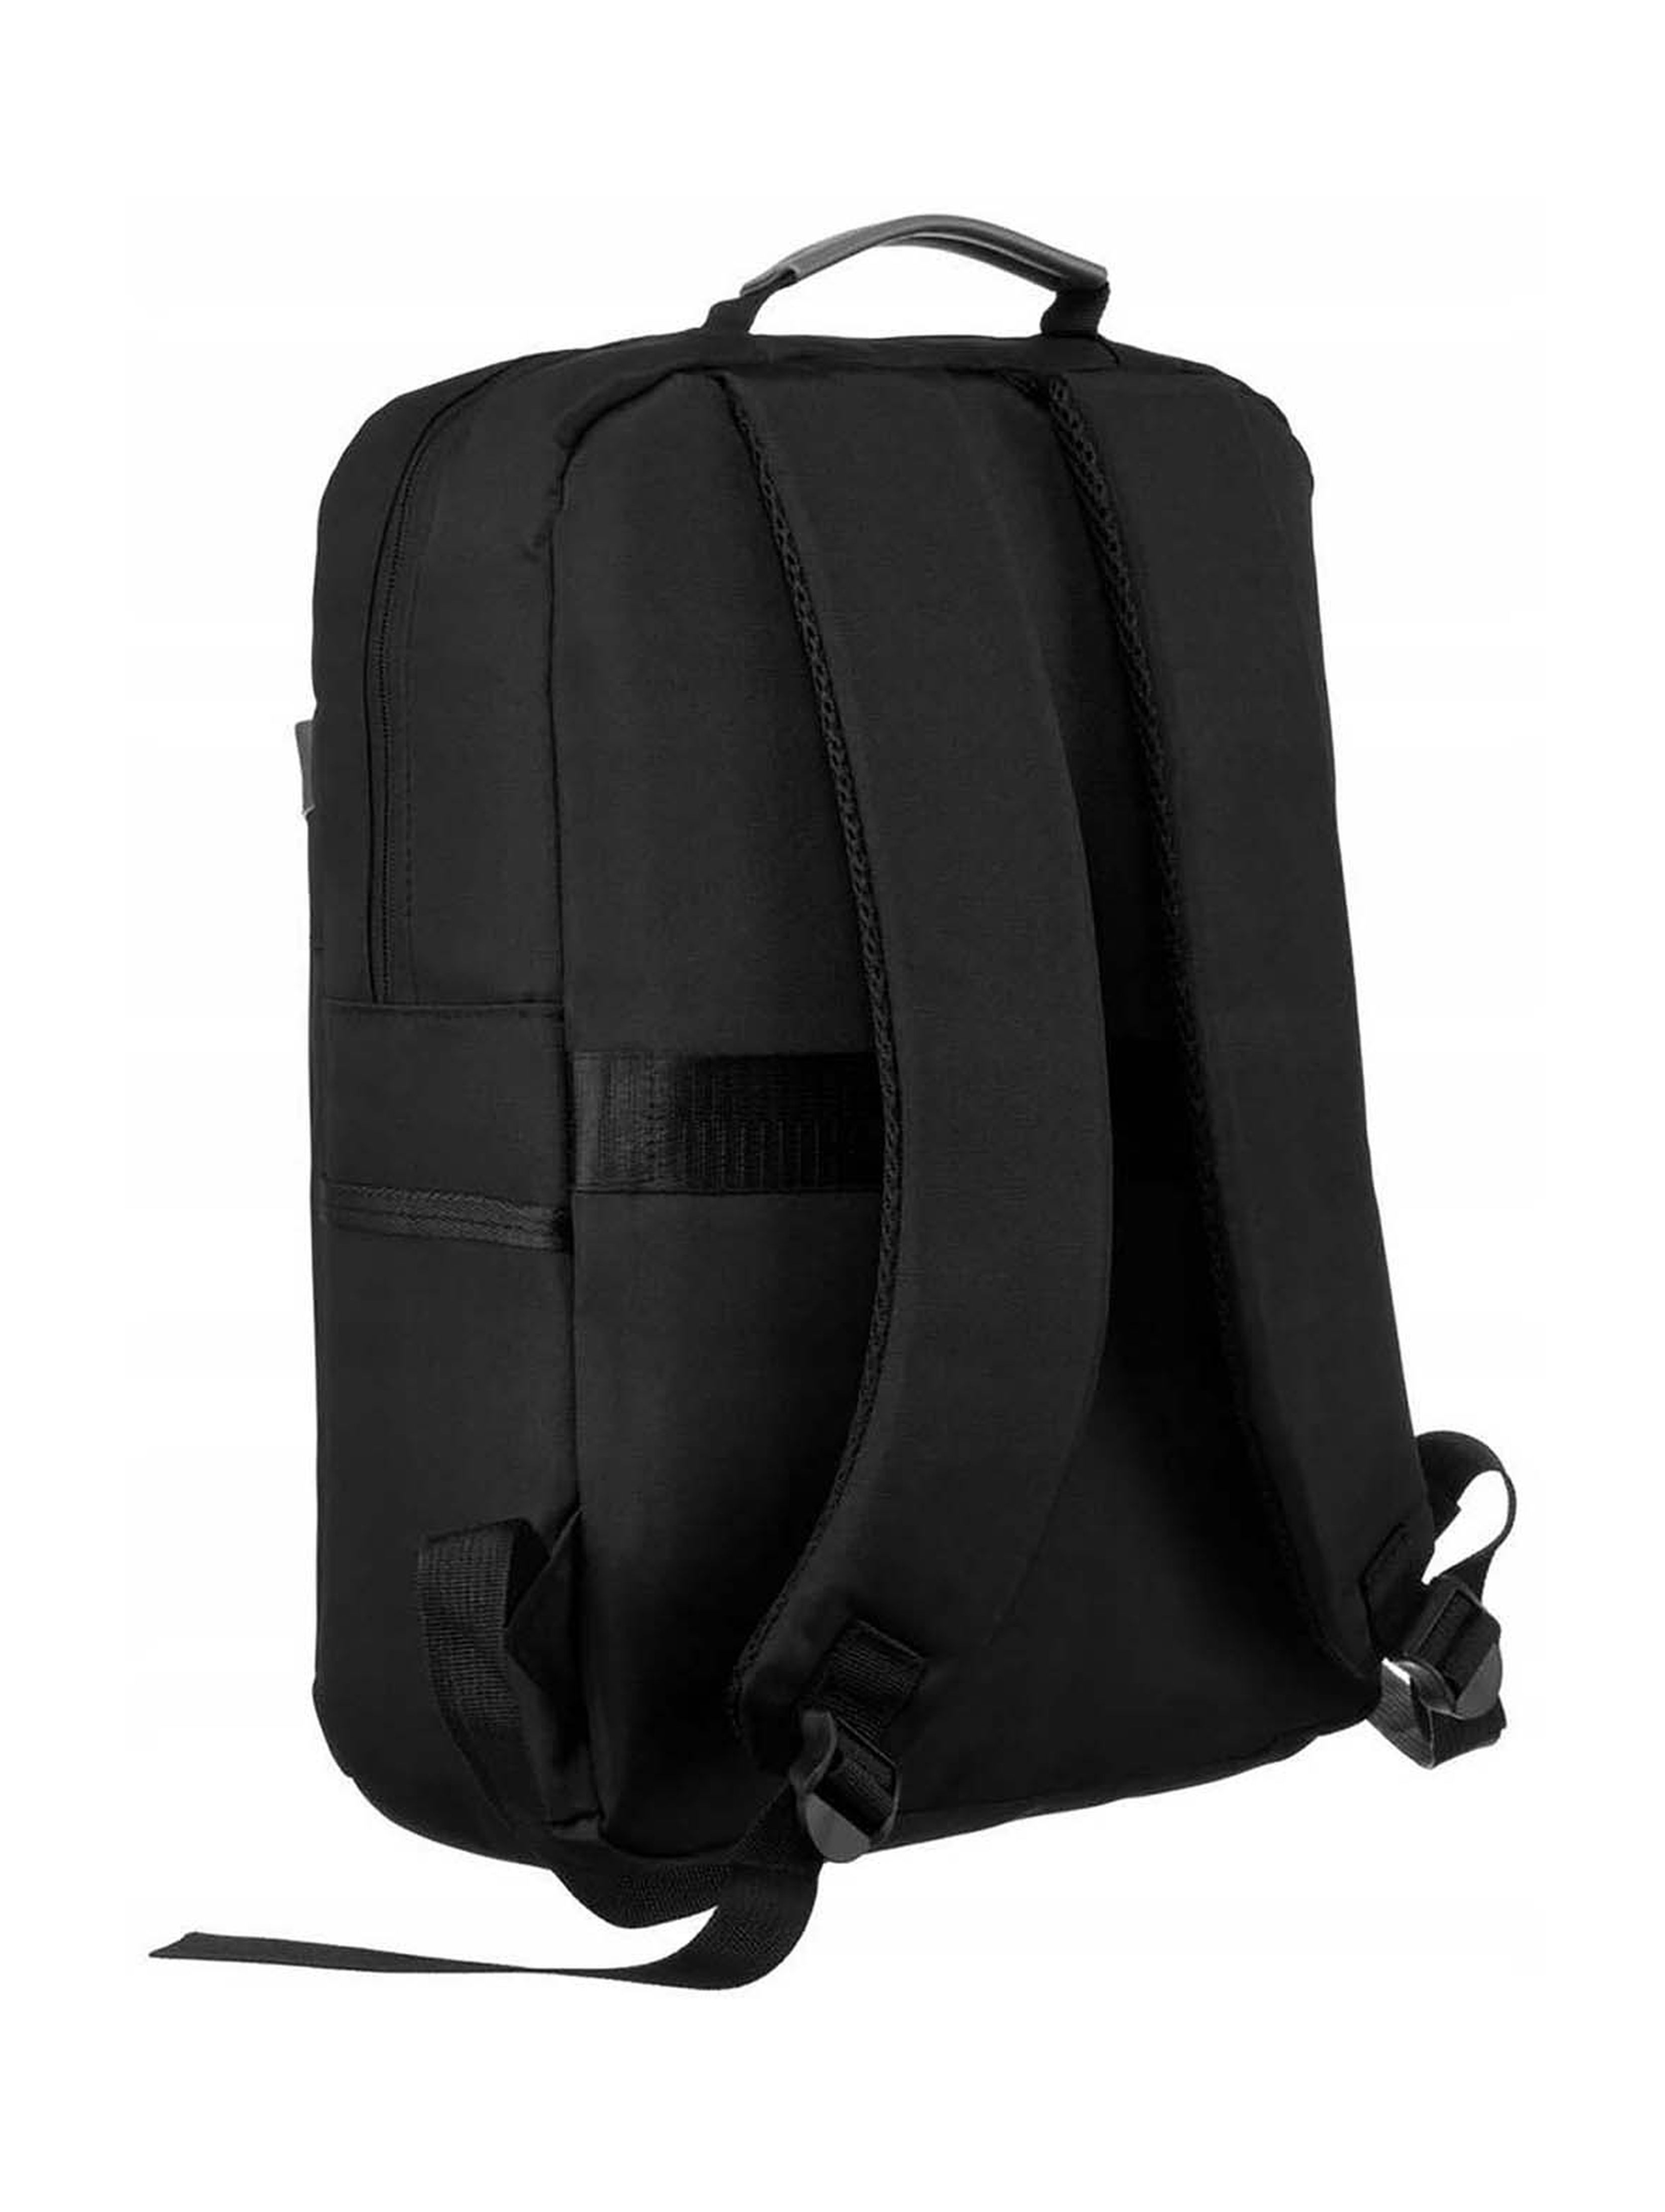 Podróżny plecak unisex idealny na bagaż podręczny do samolotu - Peterson